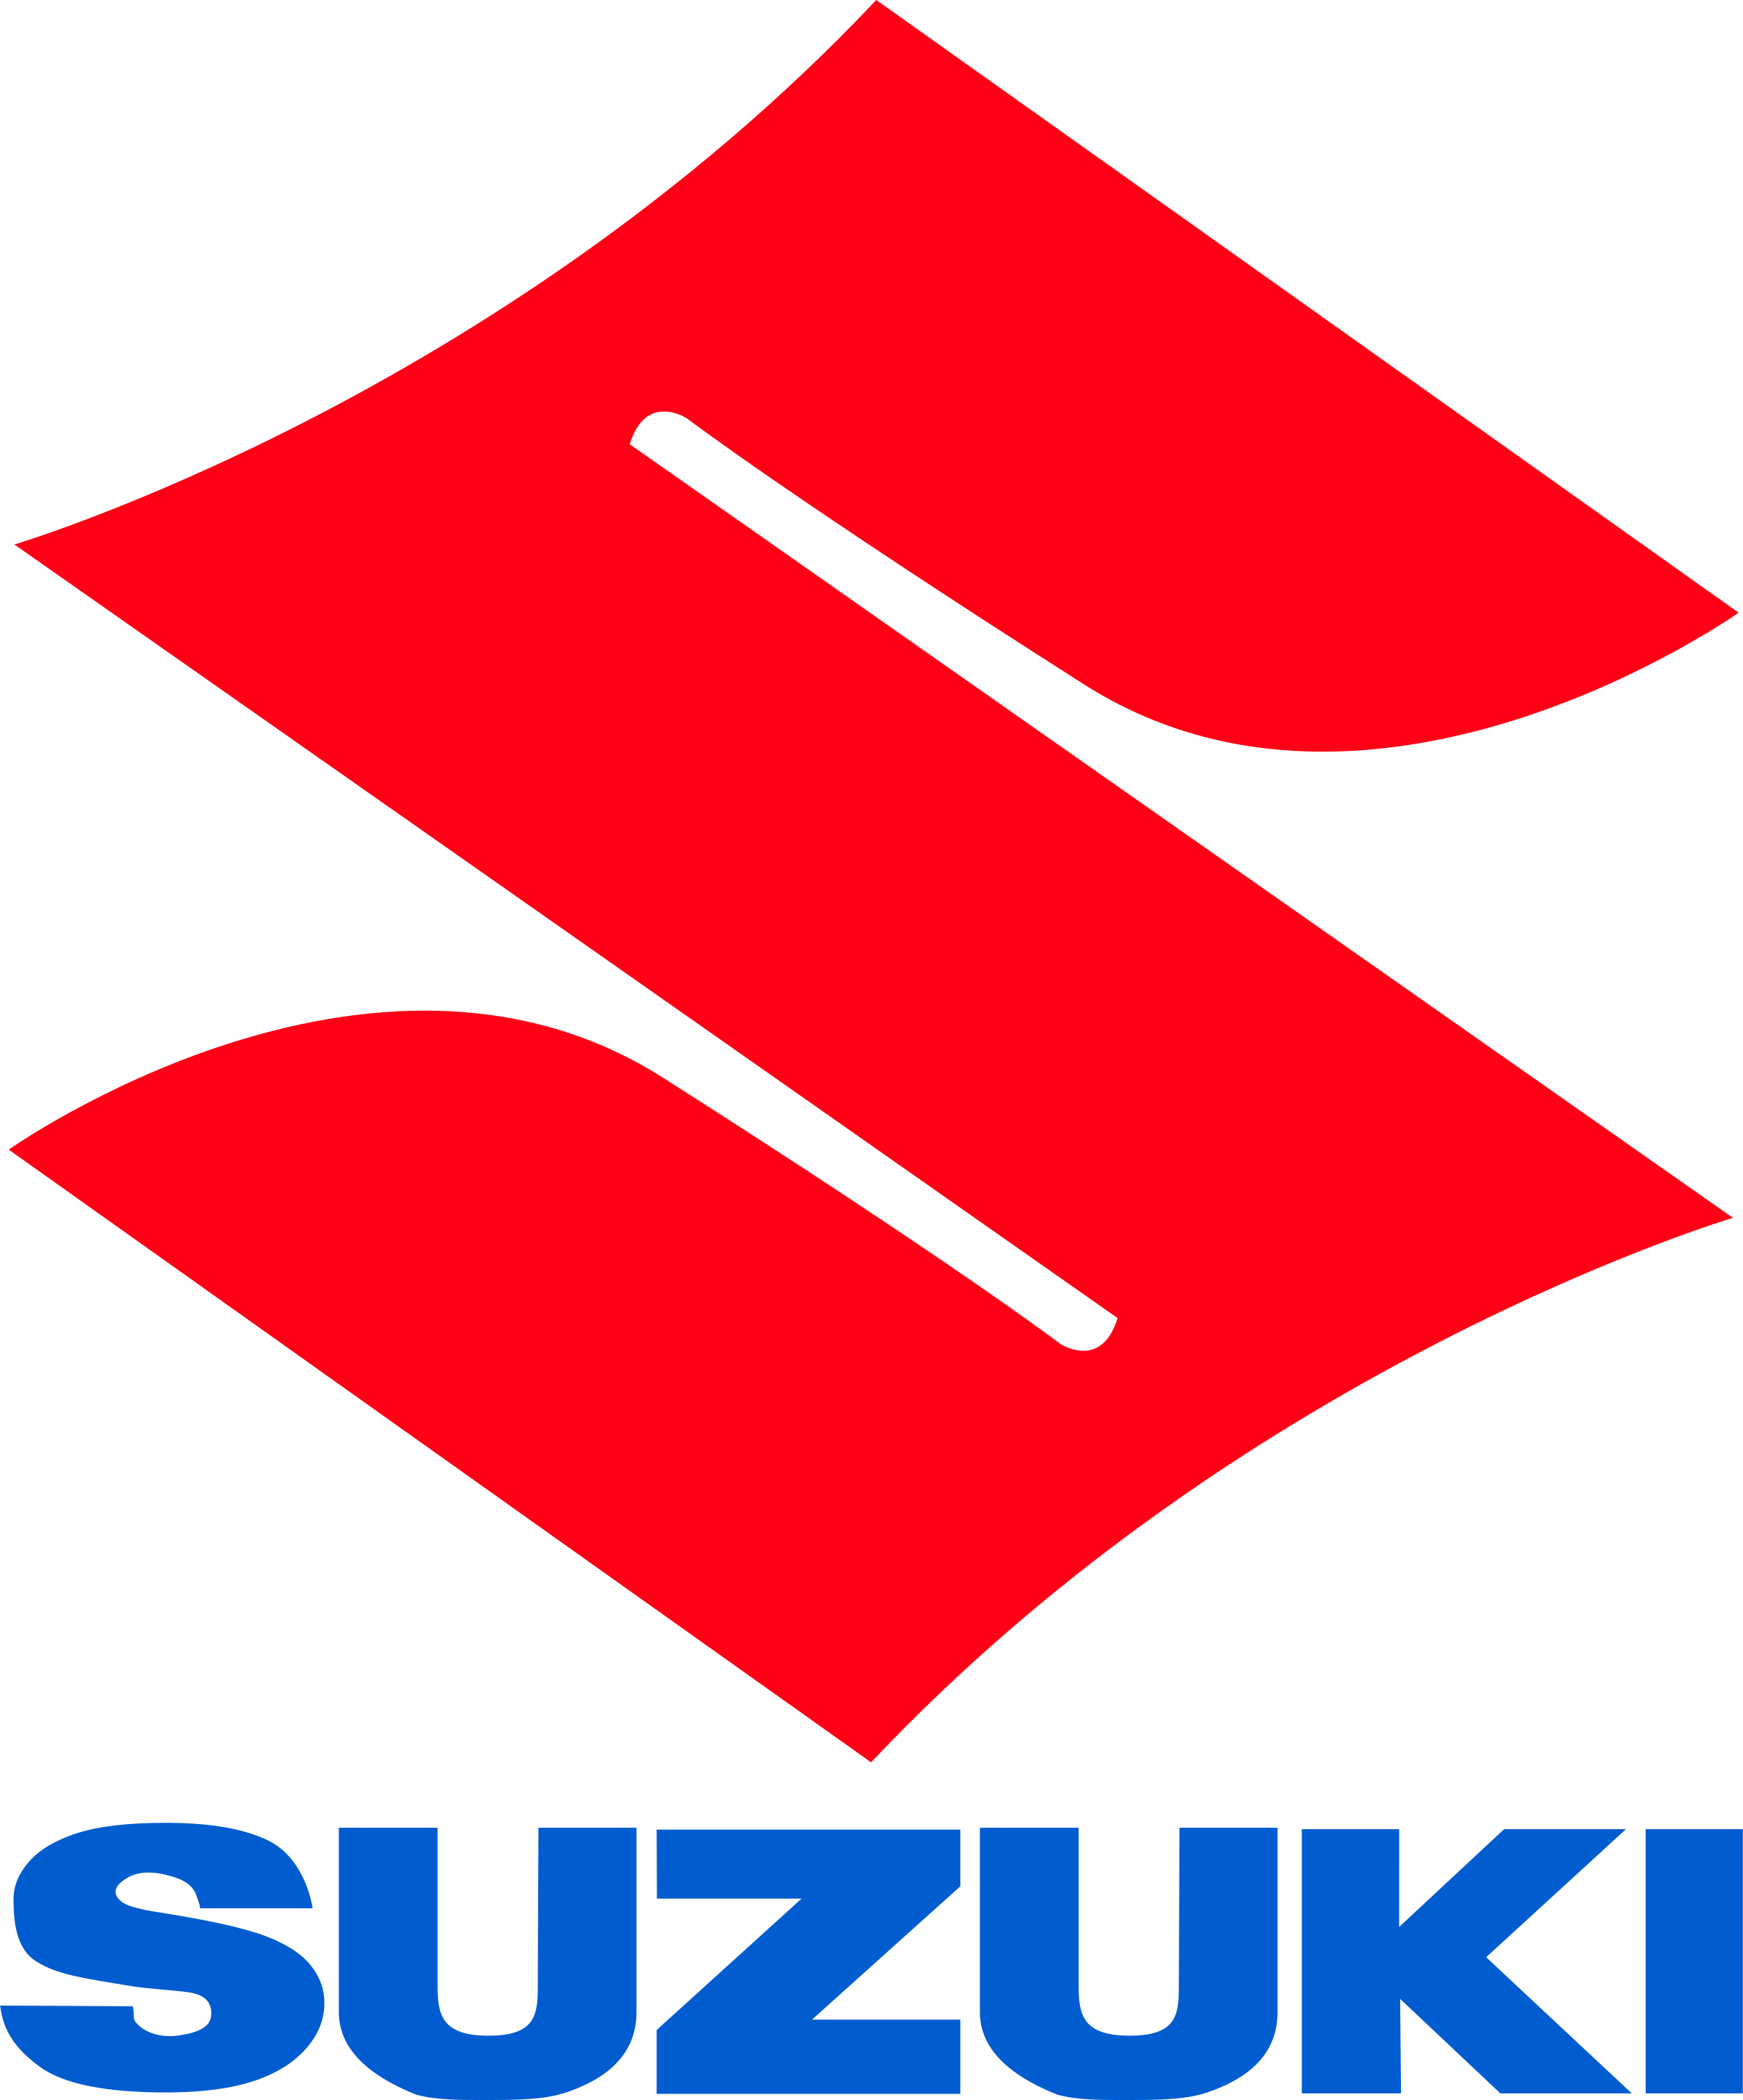 Download Free Png Suzuki Logo